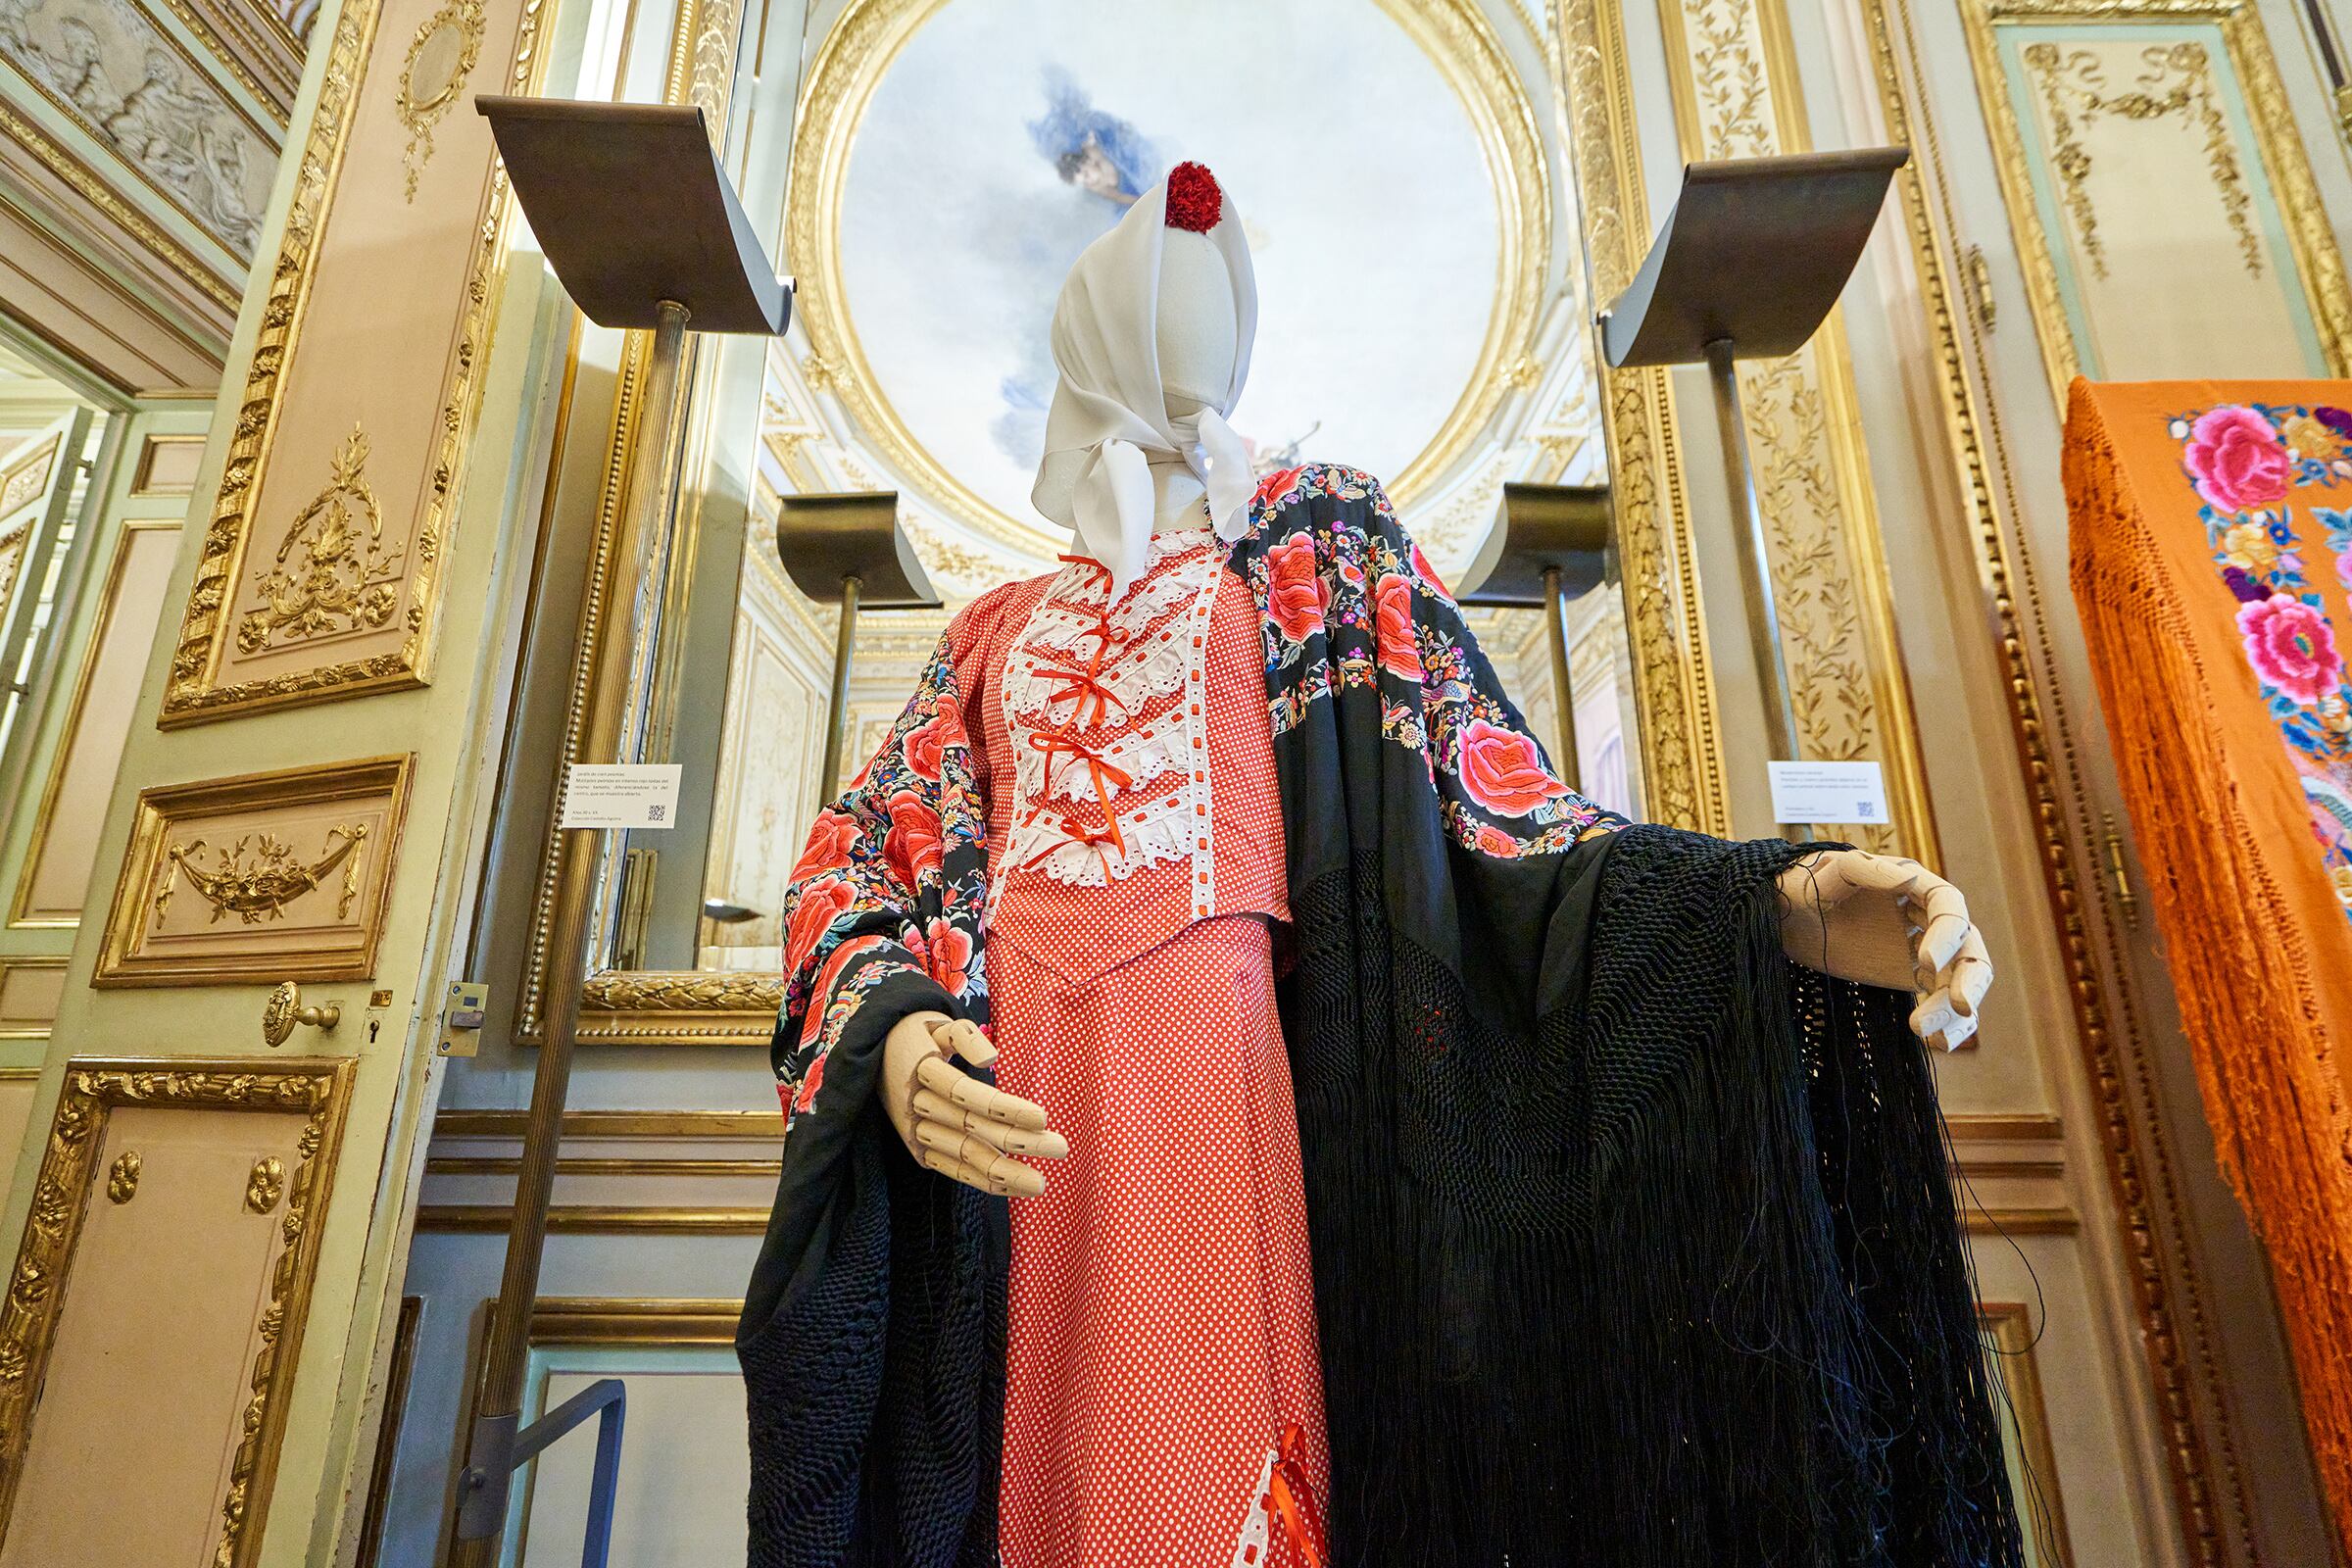 El mantón se lleva sobre distintos trajes regionales españoles.